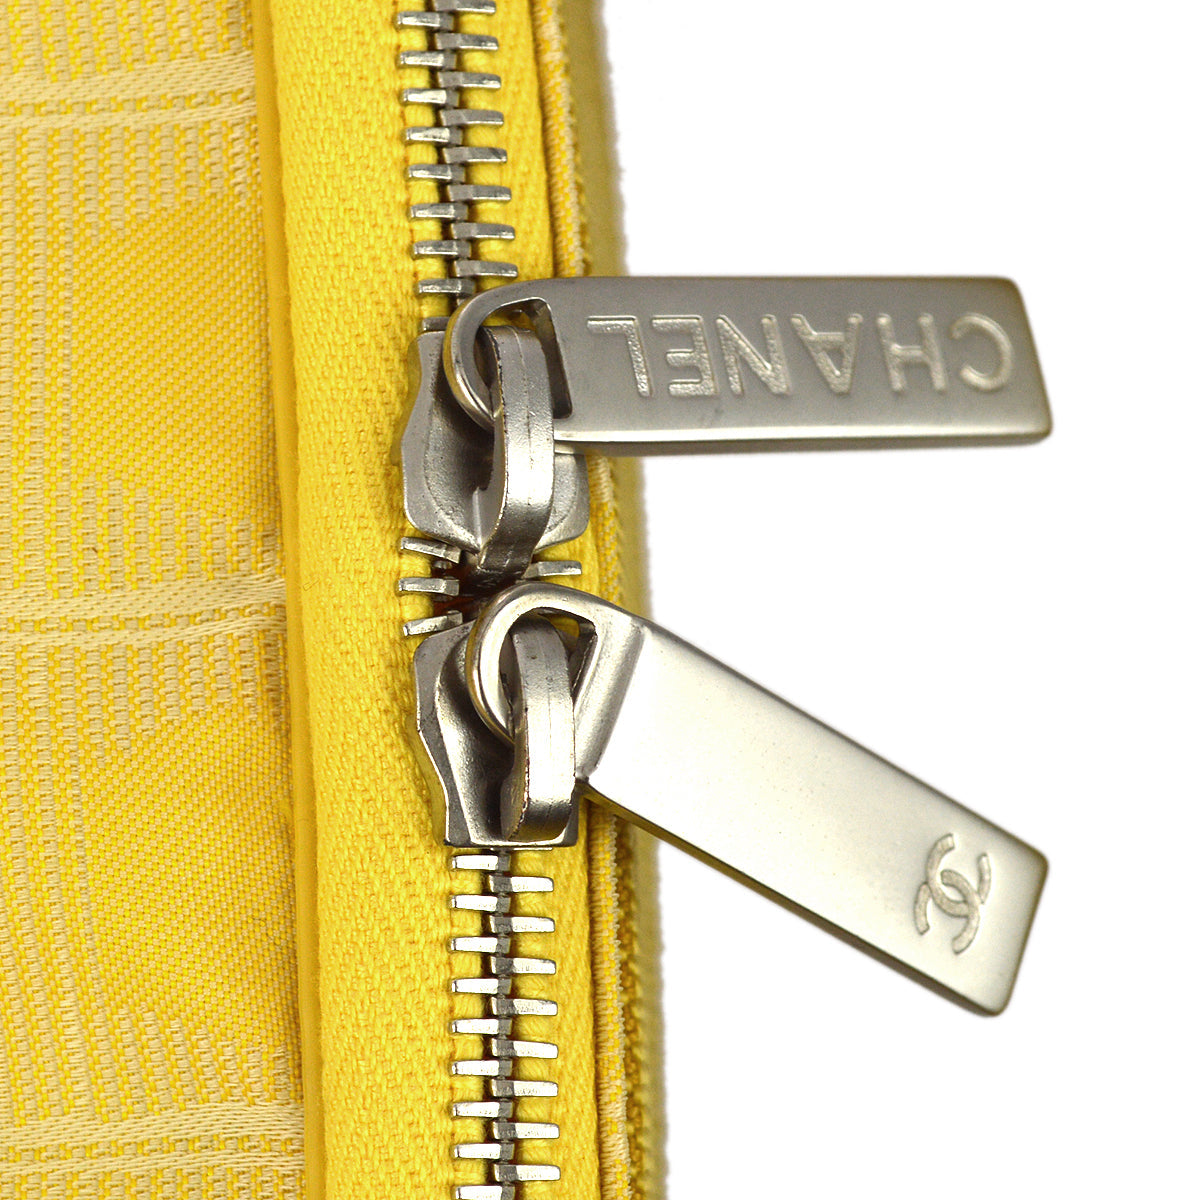 Chanel 2001-2003 黃色提花尼龍新旅行系列手袋